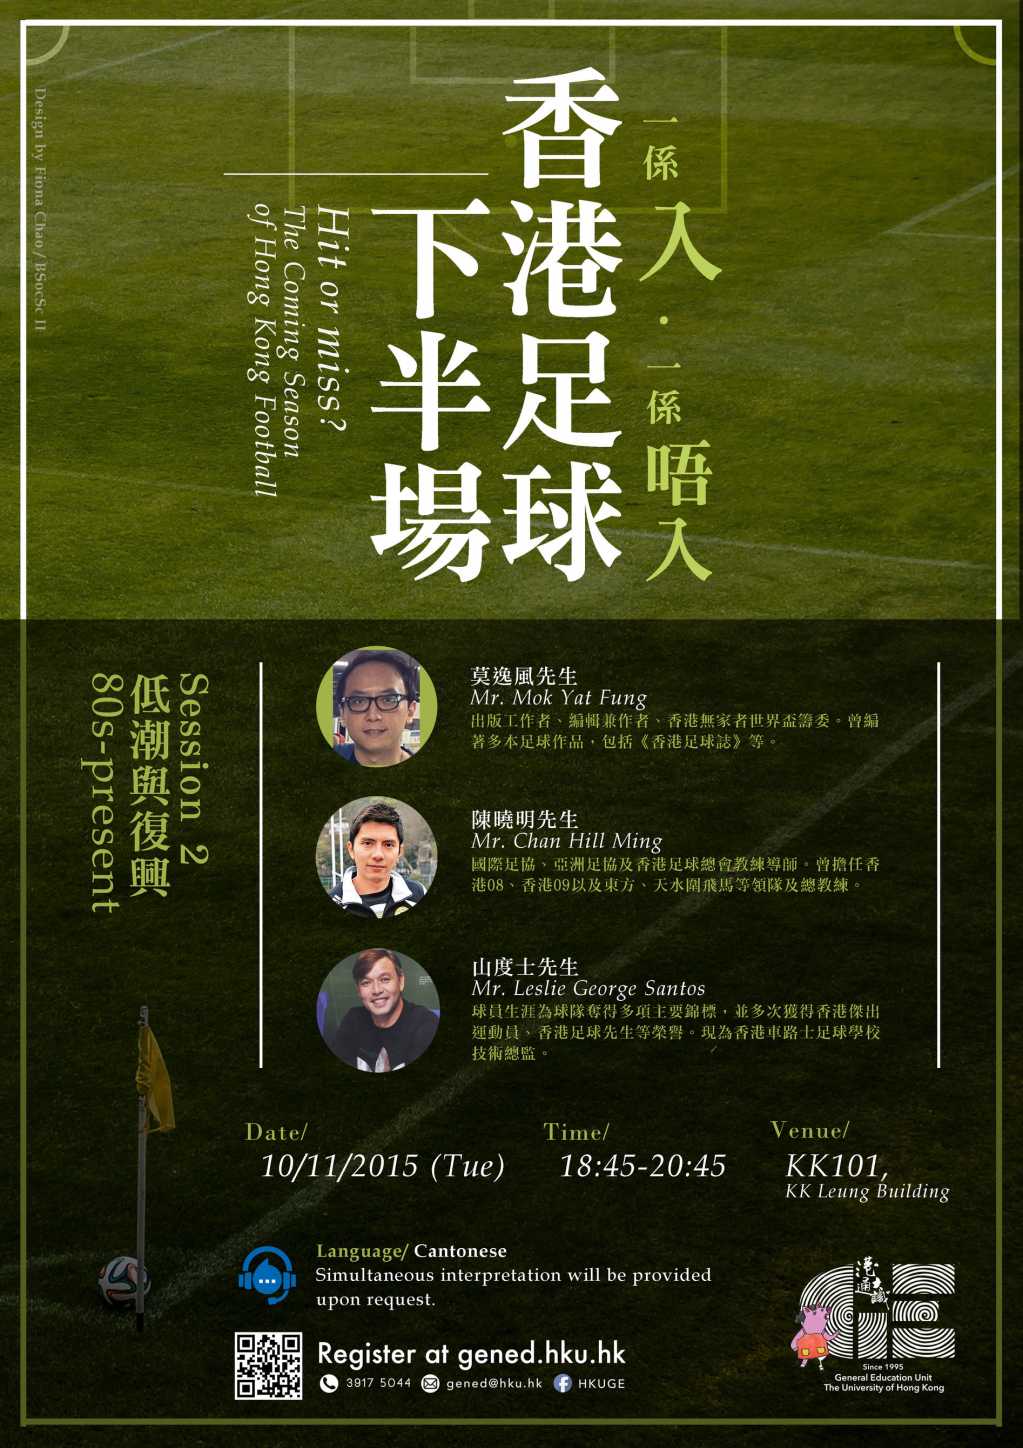 Coming Season of Hong Kong Football 